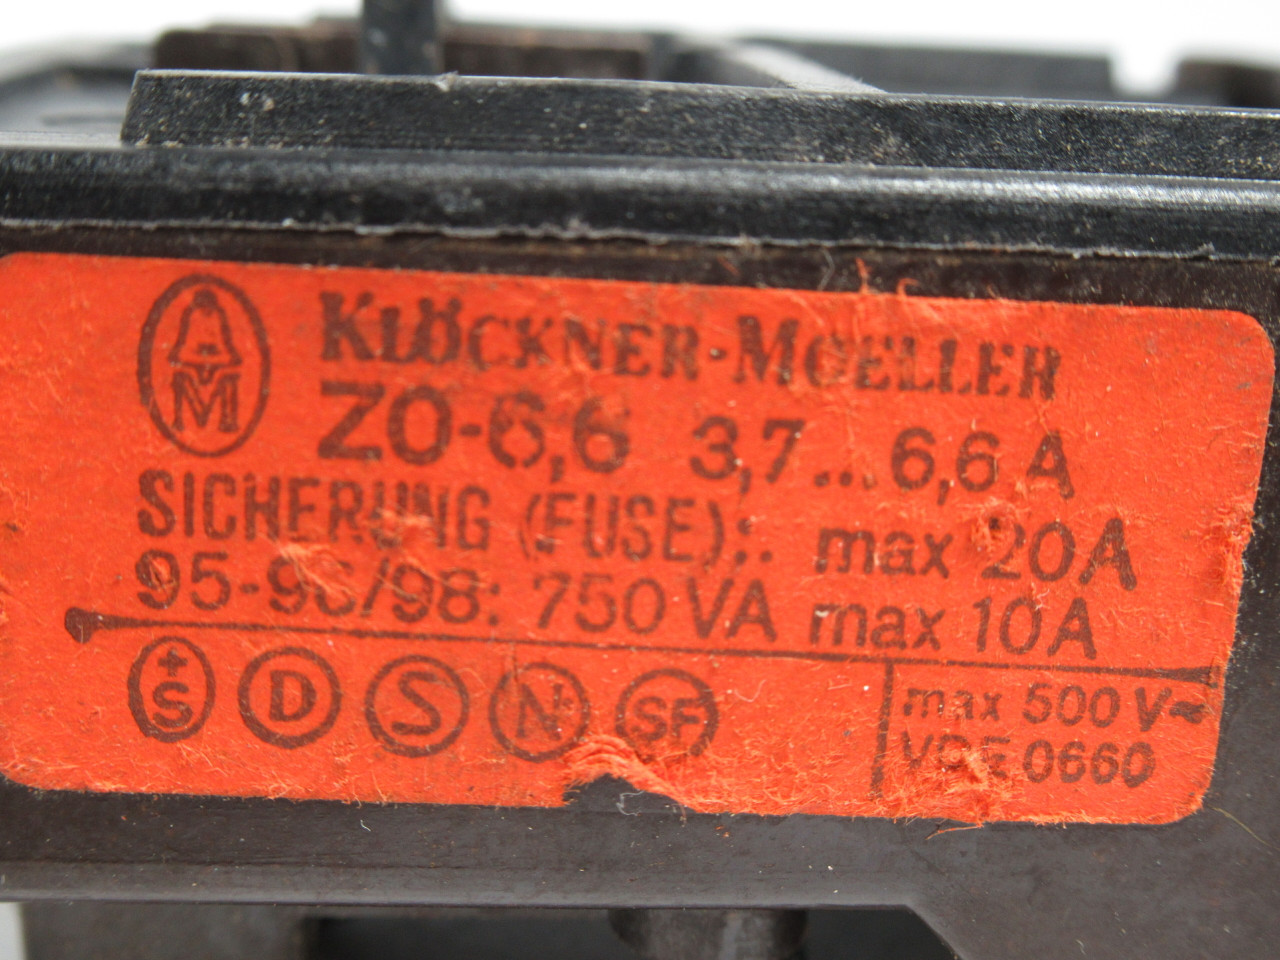 Klockner-Moeller Z0-6.6 Overload Relay 3.7-6.6A 500V USED